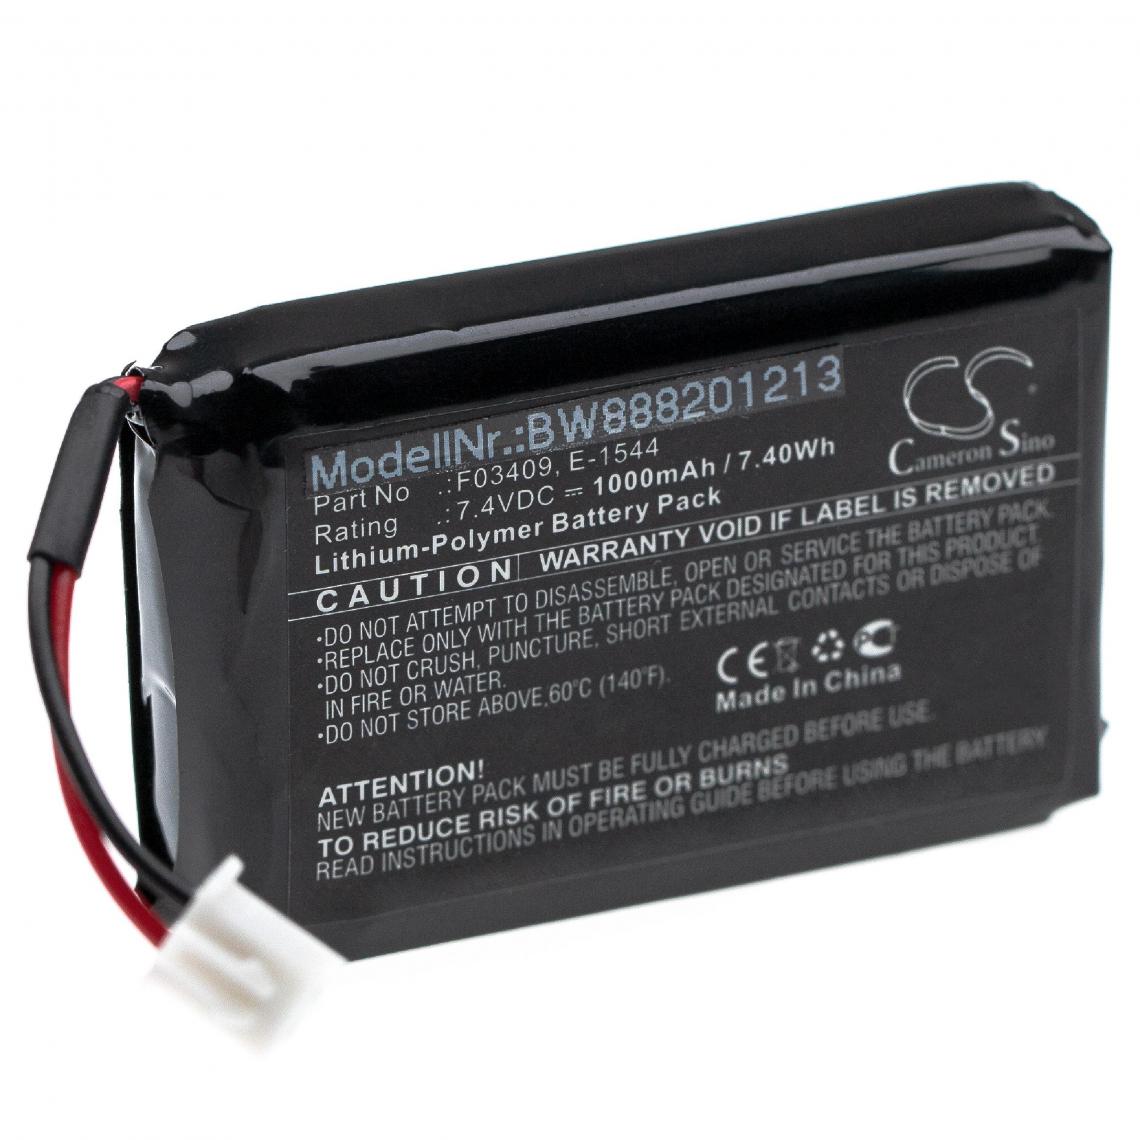 Vhbw - vhbw Batterie remplace Satlink E-1544, F03409 pour outil de mesure (1000mAh 7,4V Li-Polymère) - Piles rechargeables